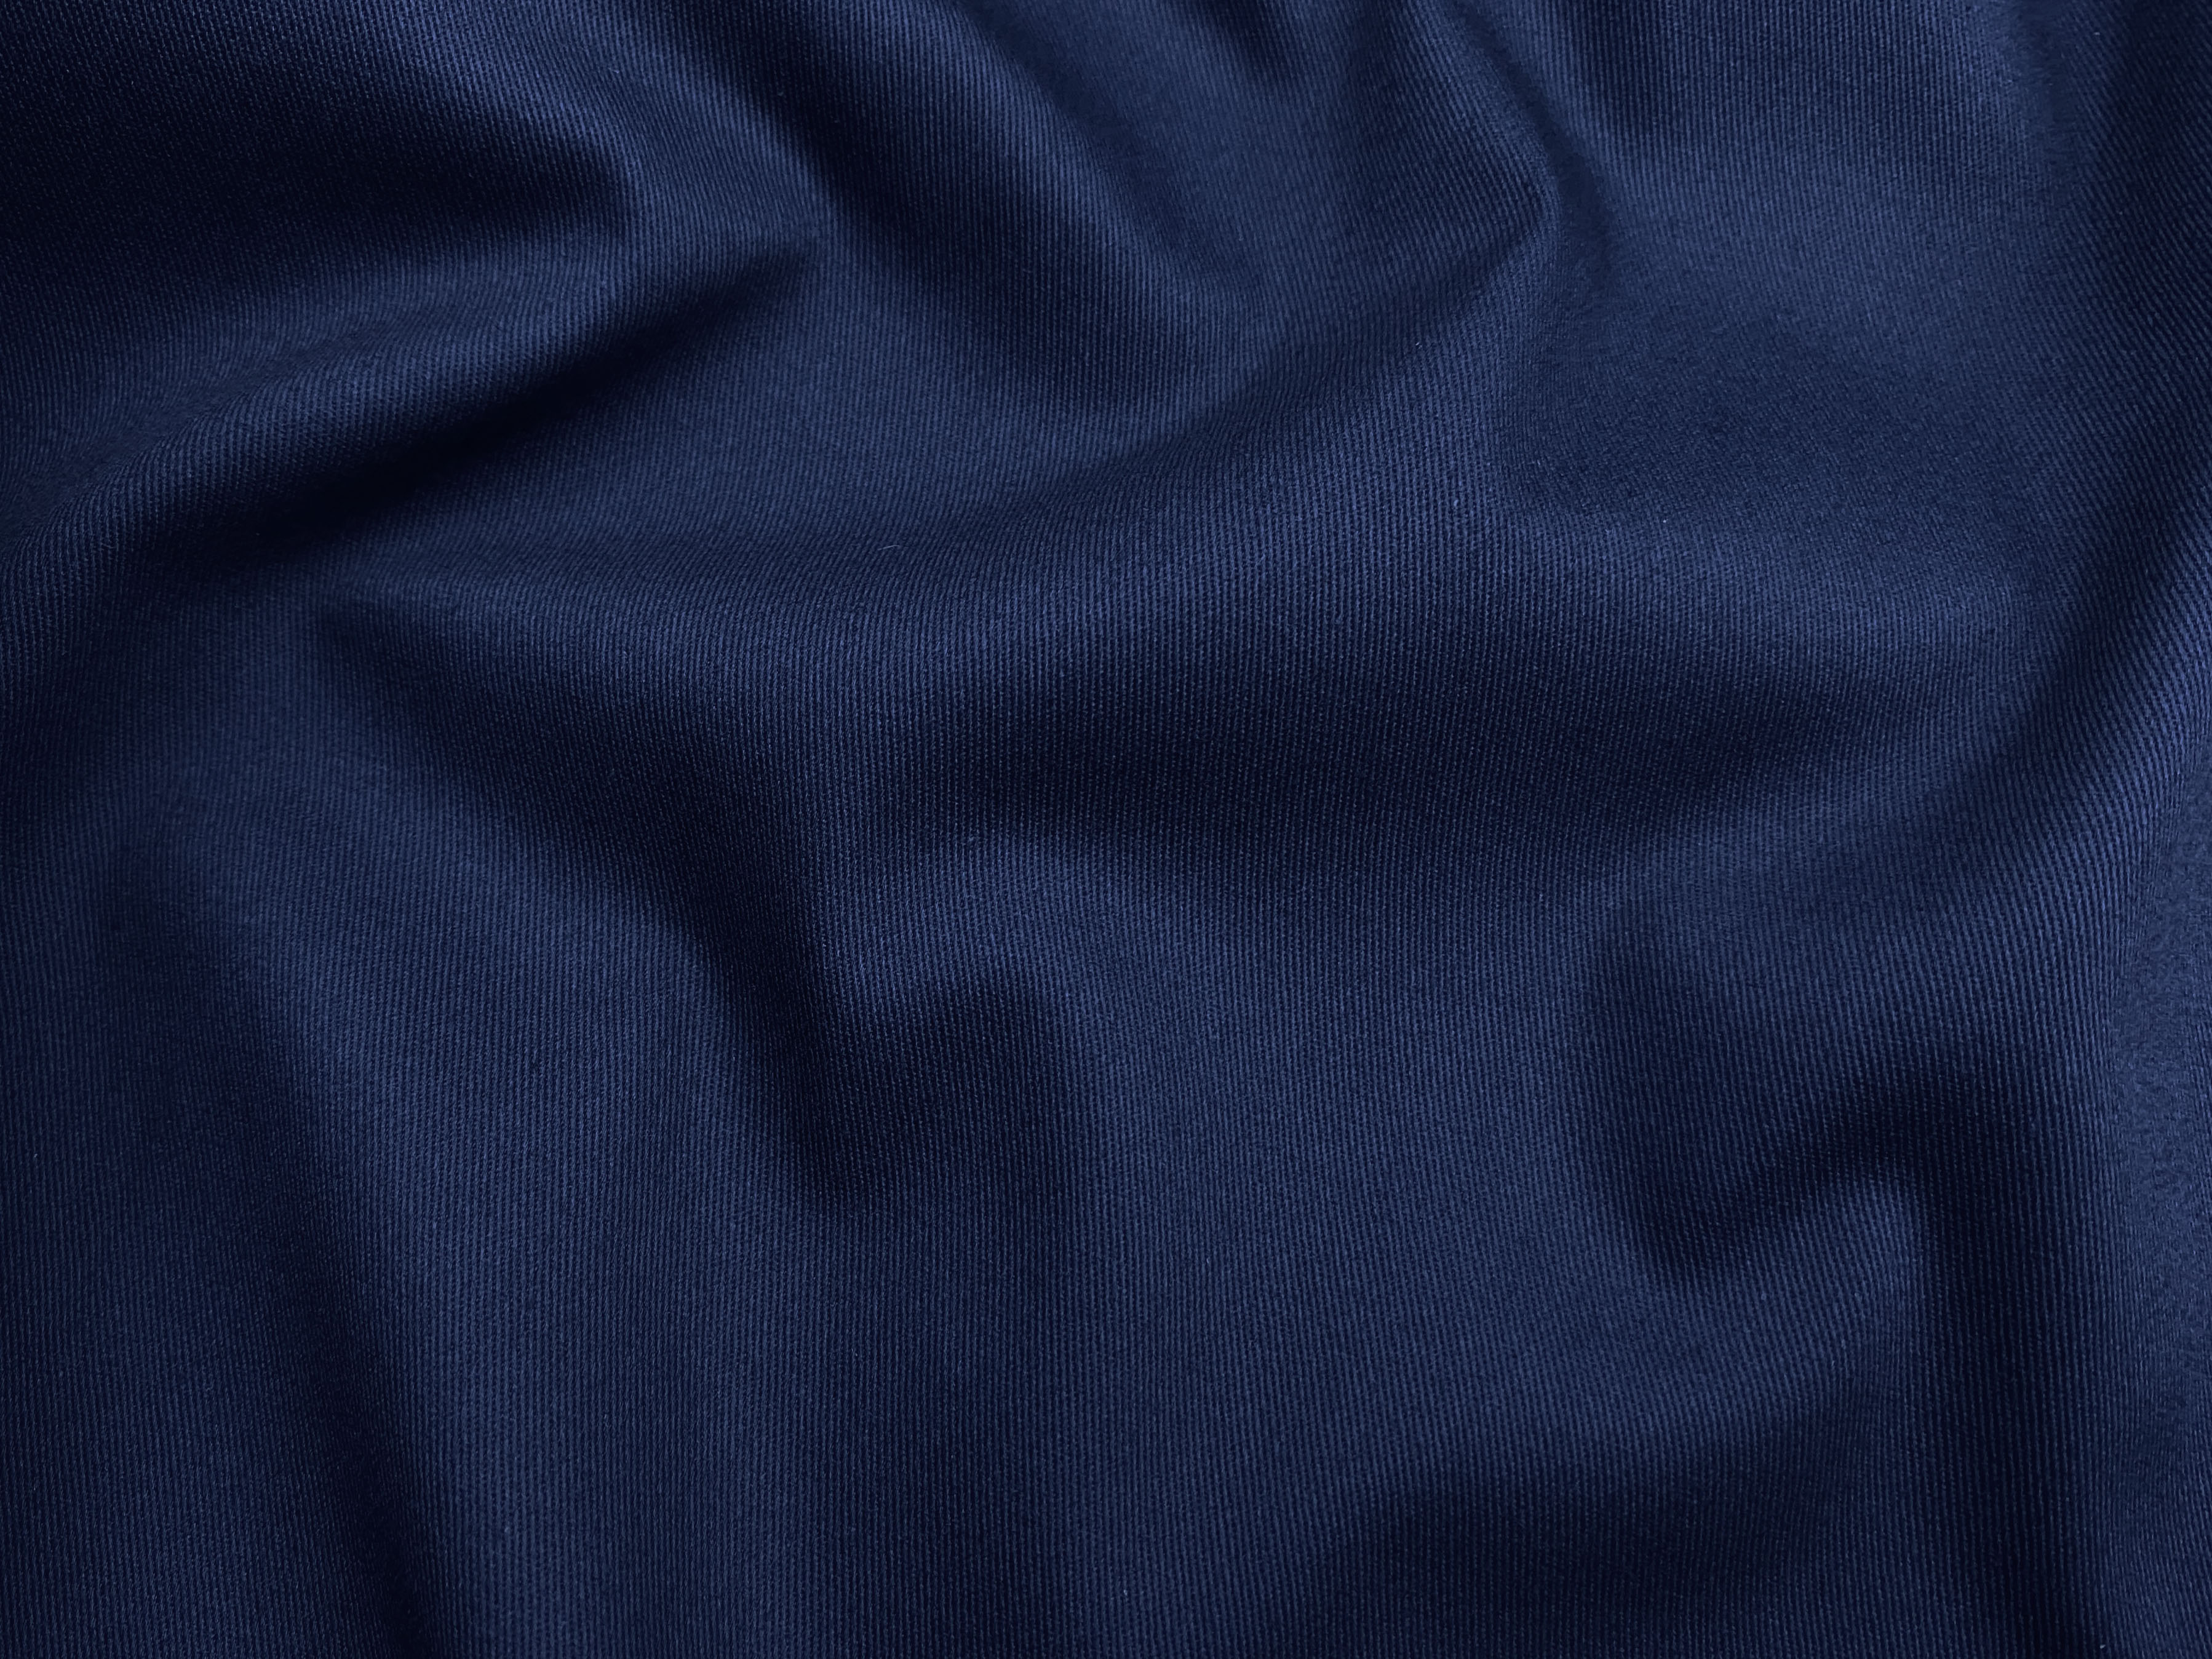 Ткань Хлопок тёмно-синего цвета однотонная  16844 2